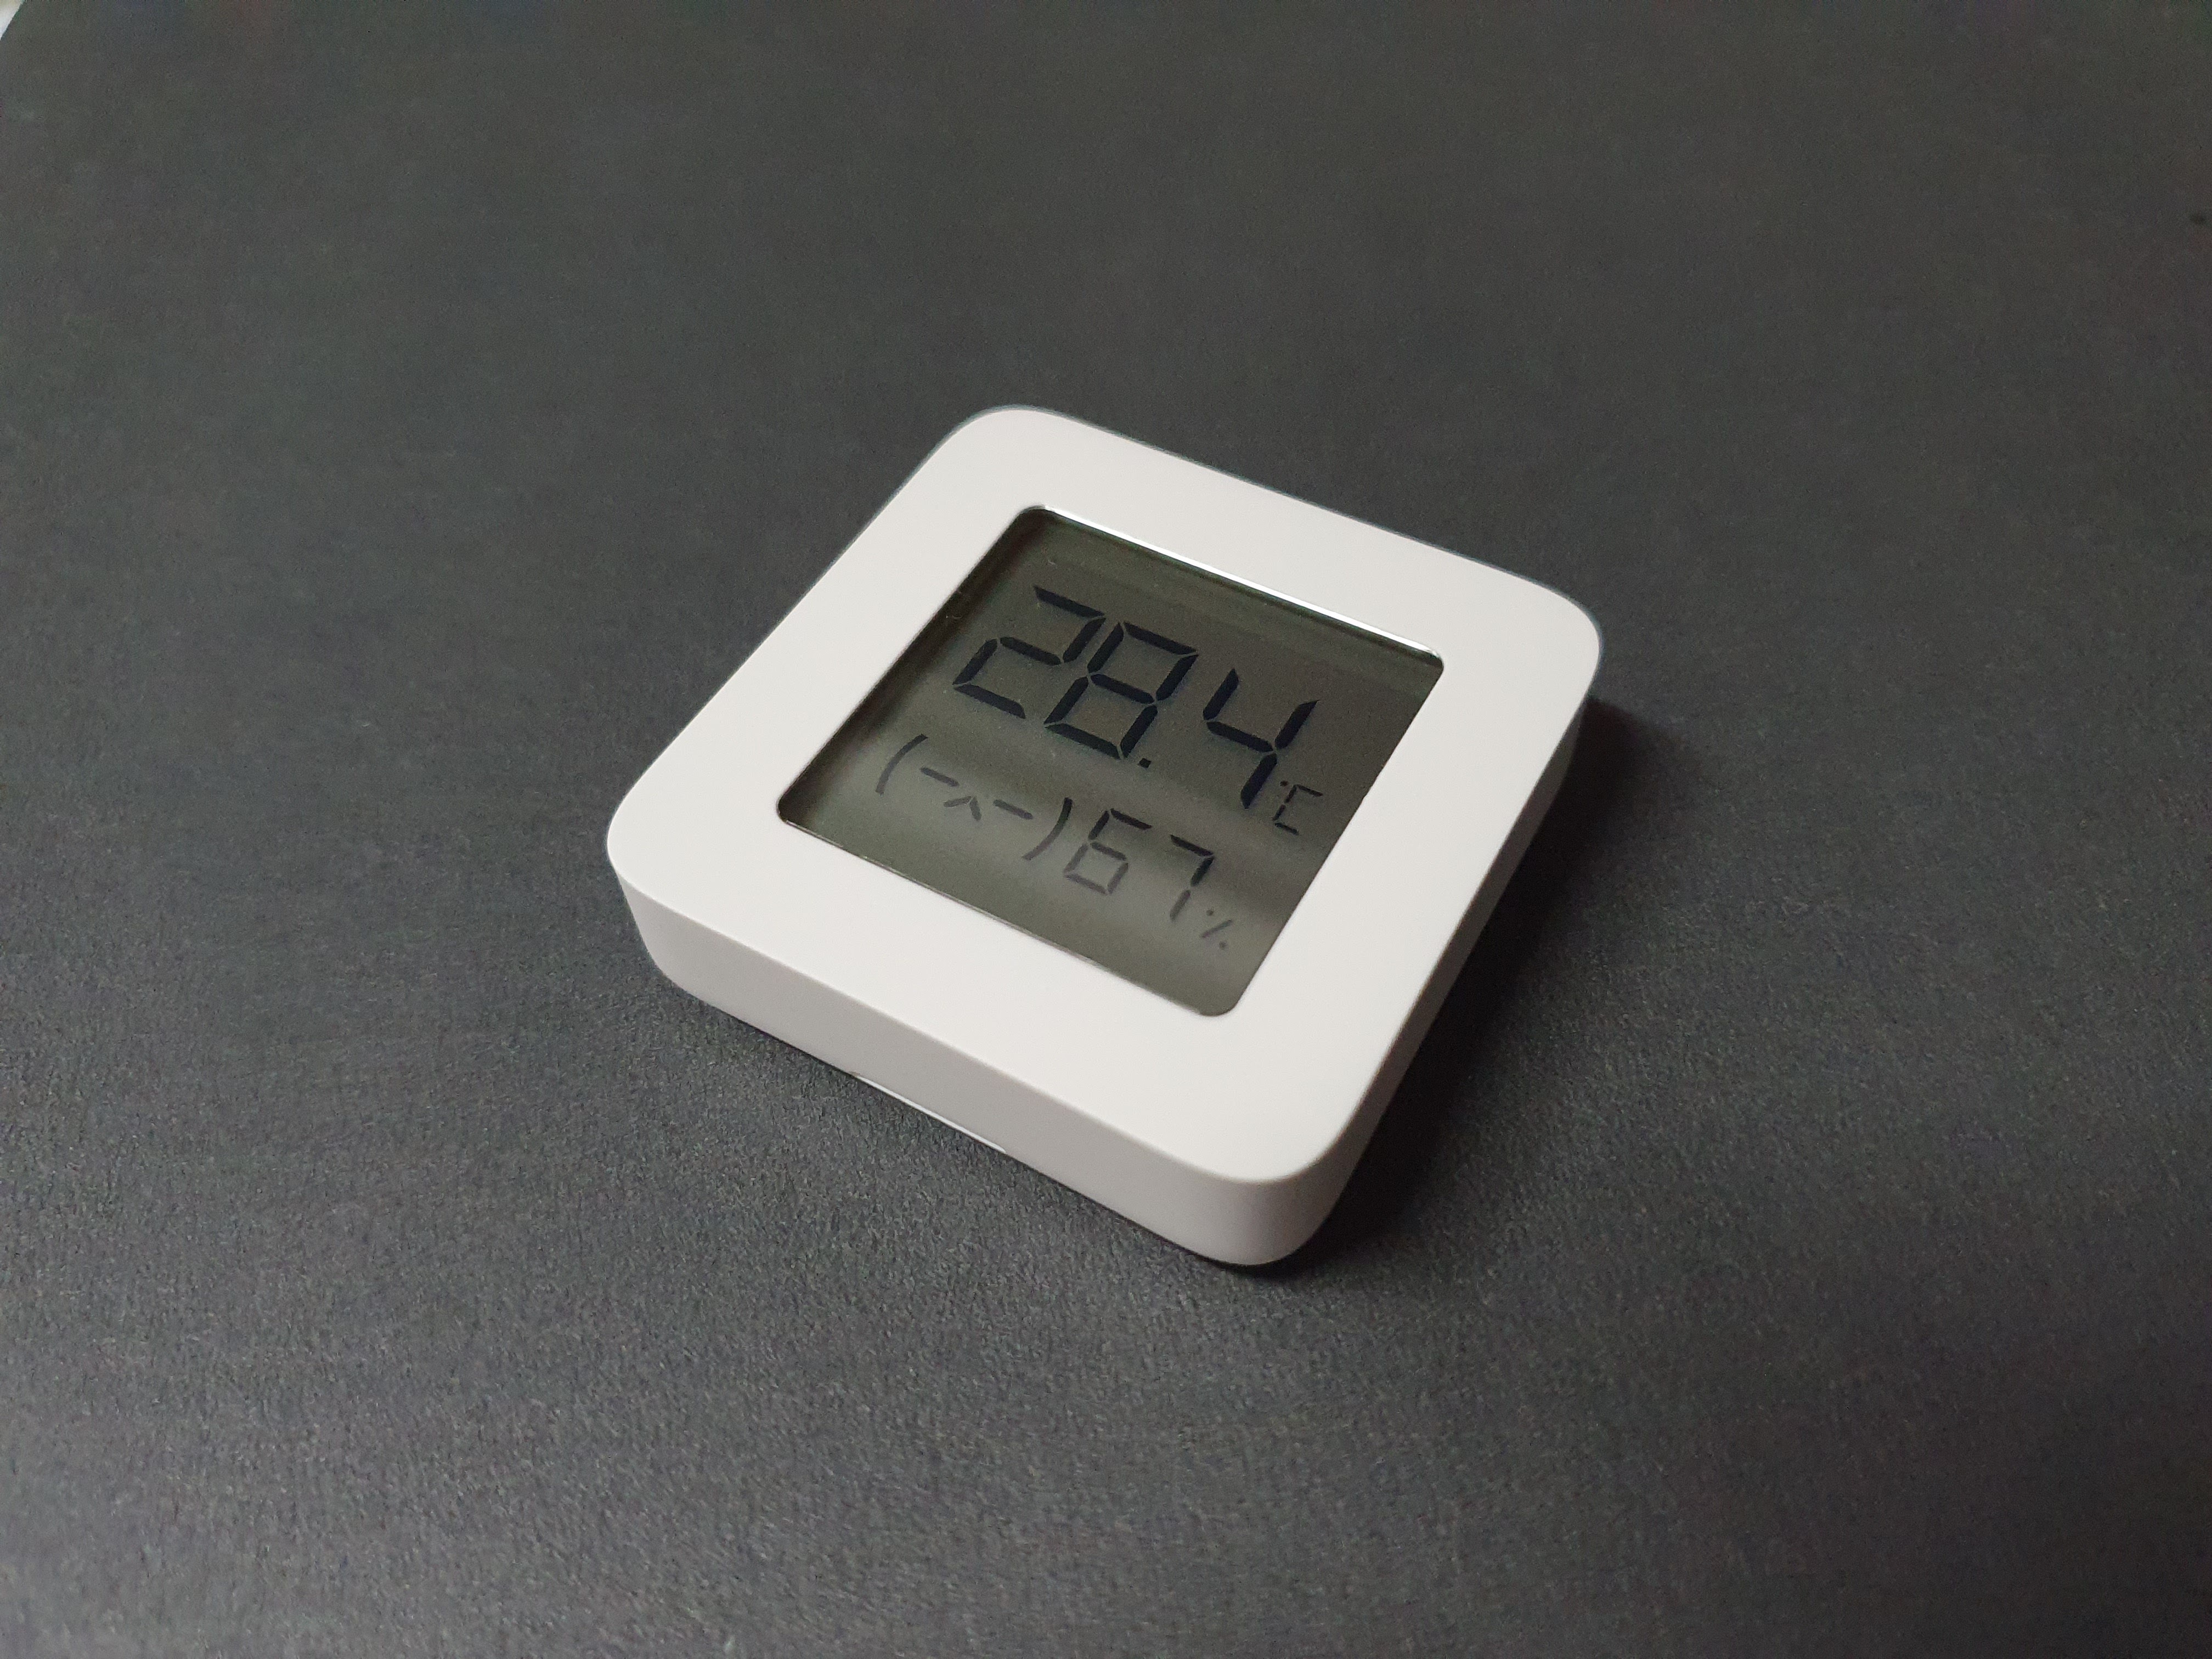 XIAOMI - Mi Temperature and Humidity Monitor 2